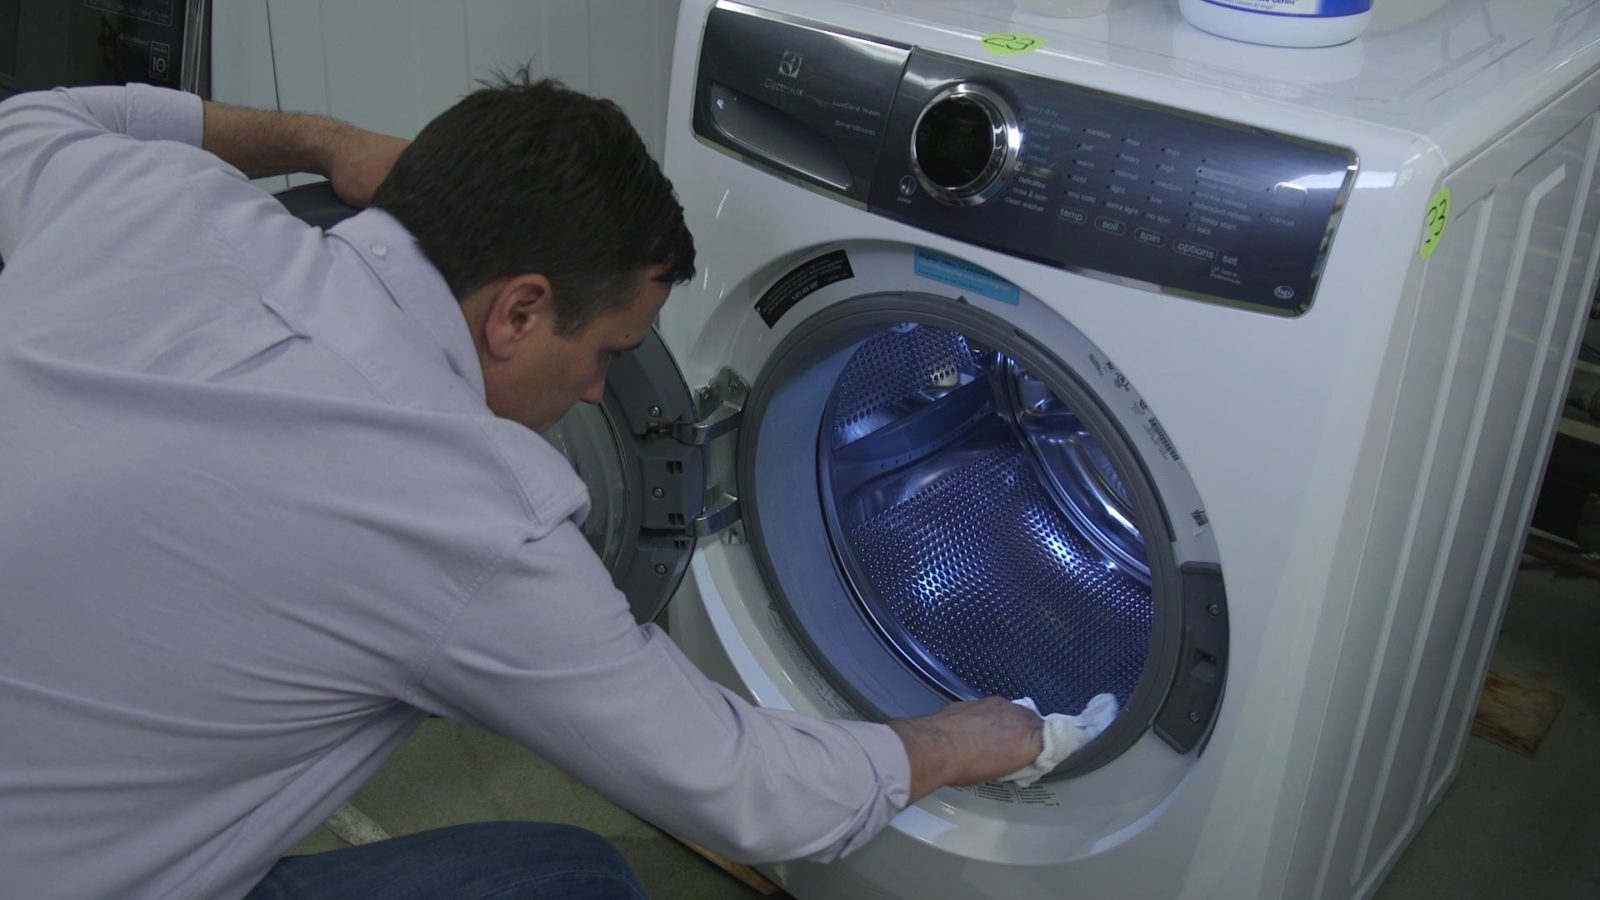 לאחר הכביסה, נגב את השרוול והתוף של מכונת הכביסה עם מטלית